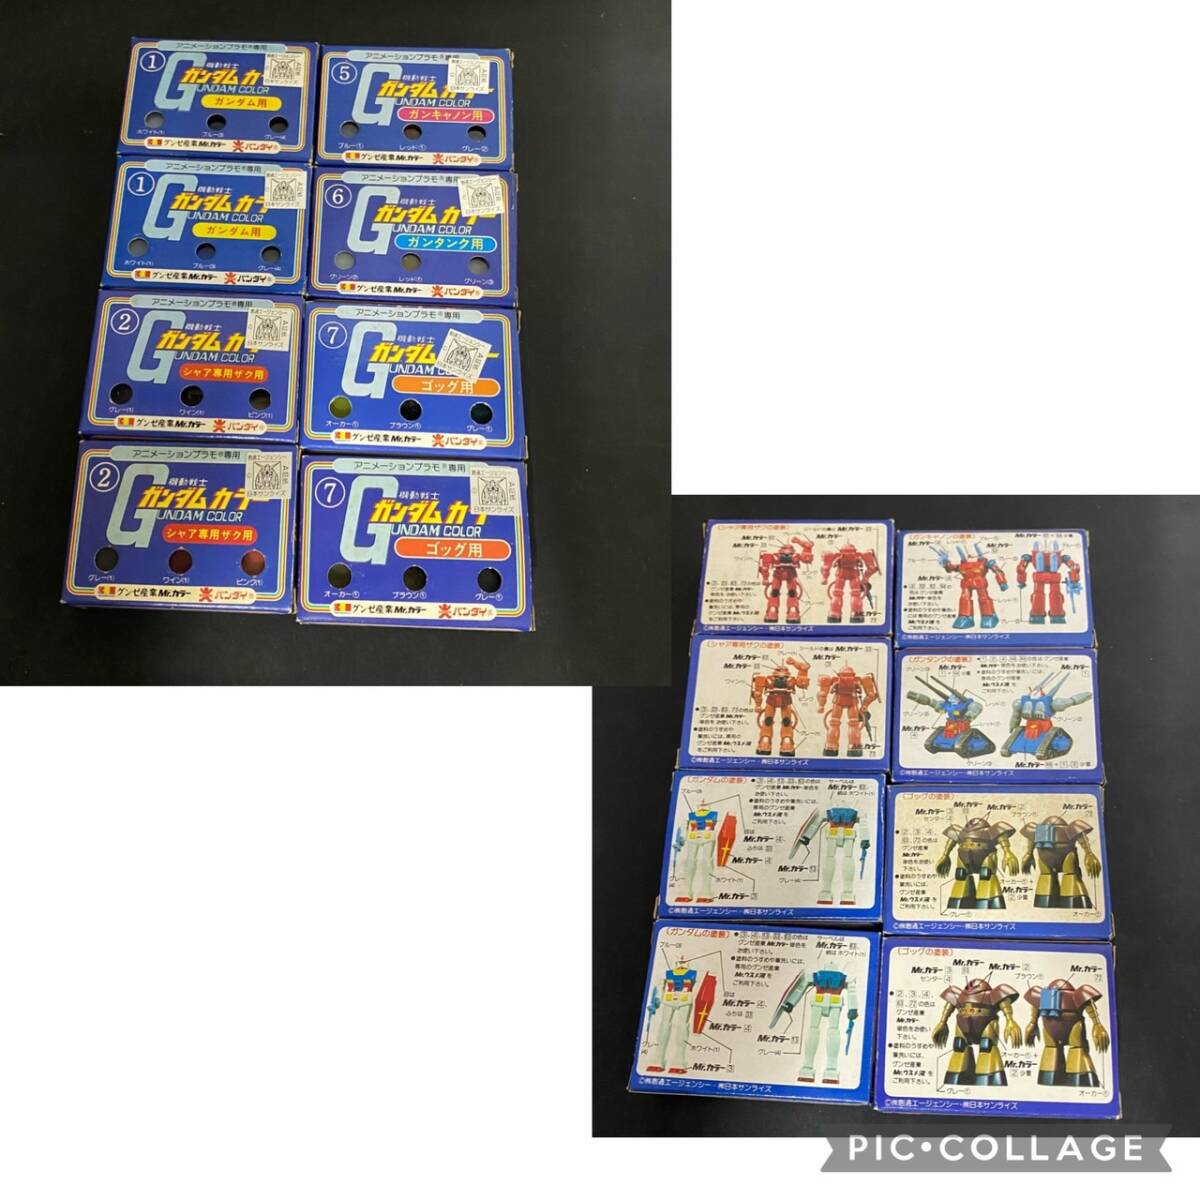 !! Gunze промышленность старый Bandai Gundam цвет анимация пластиковая модель специальный краска gun pra чернила 26 вид дополнение текущее состояние товар подлинная вещь Mr. цвет!!